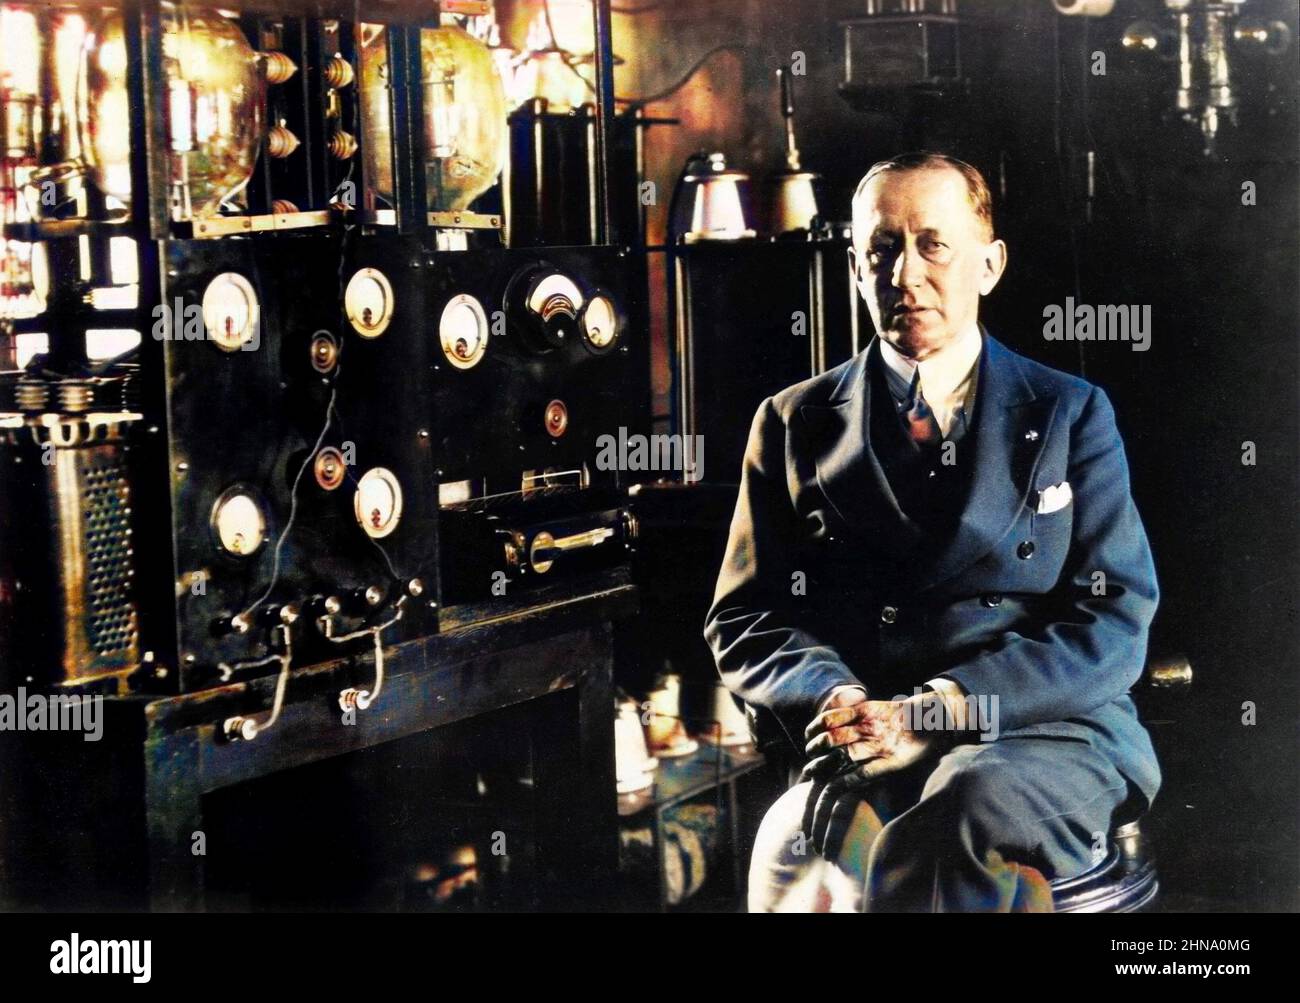 Porträt des italienischen Erfinders und Radiopioniers Guglielmo Marconi, der vor einem Telegrafen im Labor an Bord seiner Yacht 'Electra' sitzt. Um 1935 Stockfoto